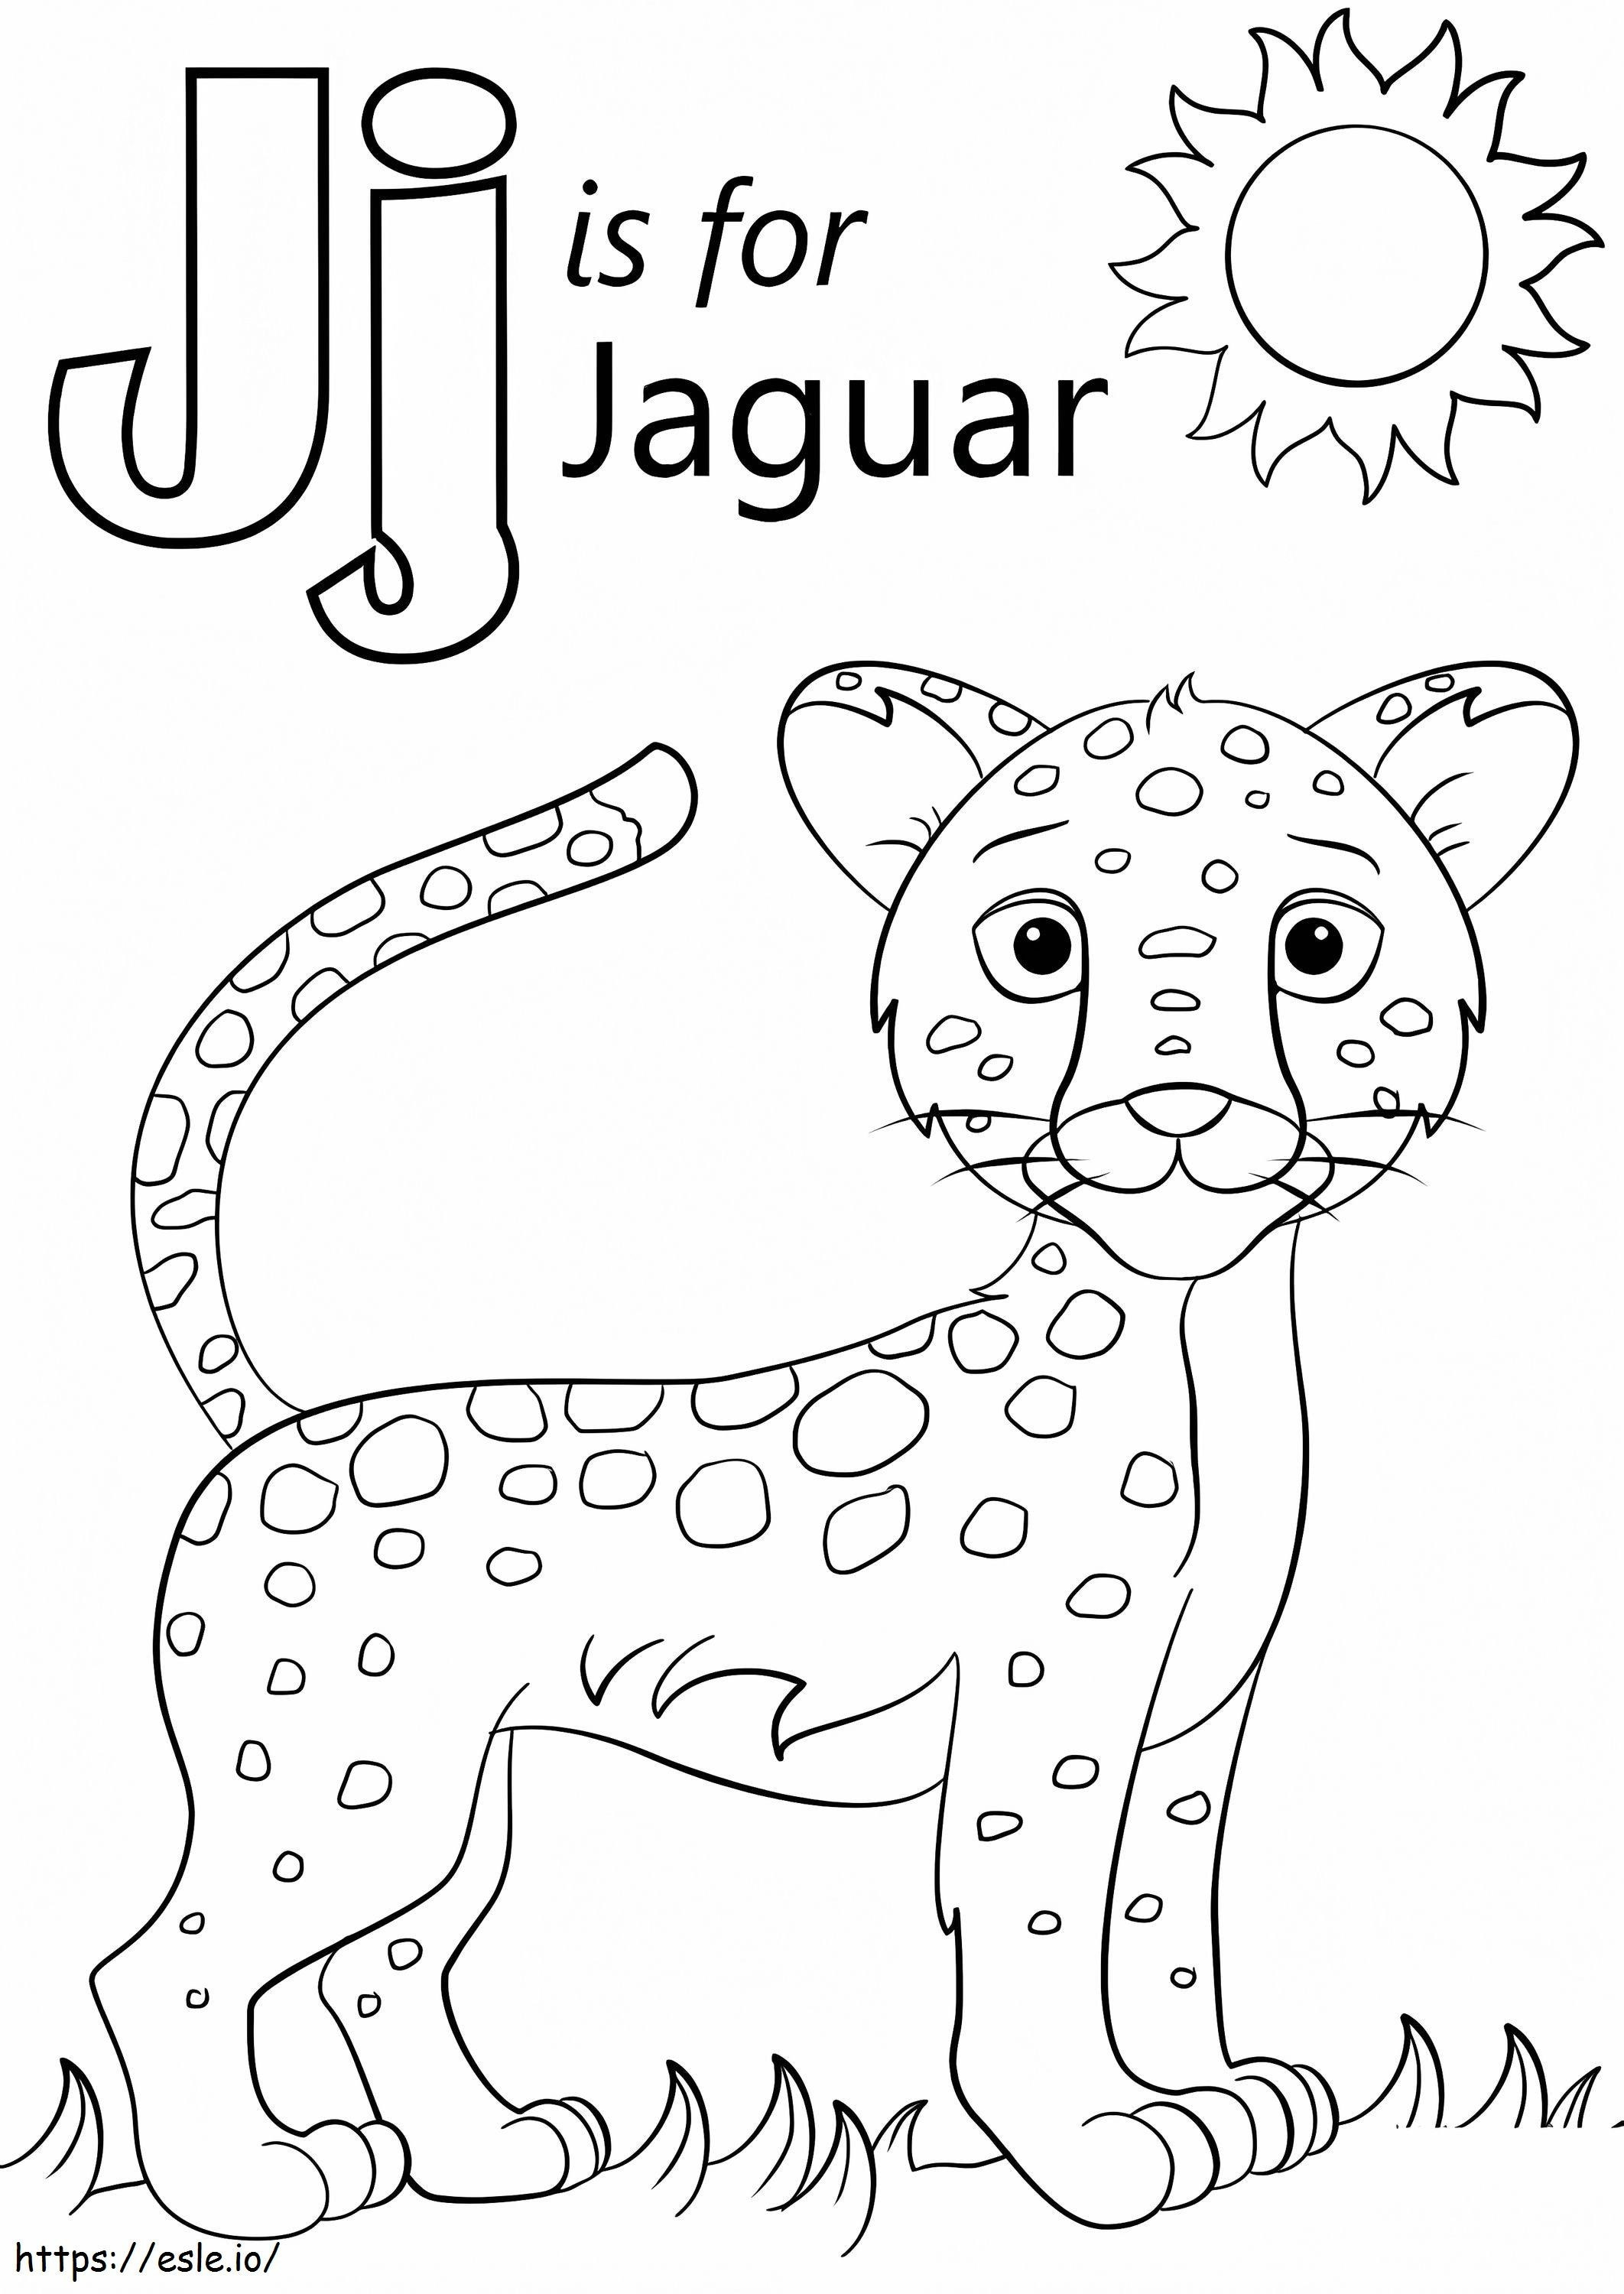 Jaguar Letter J coloring page